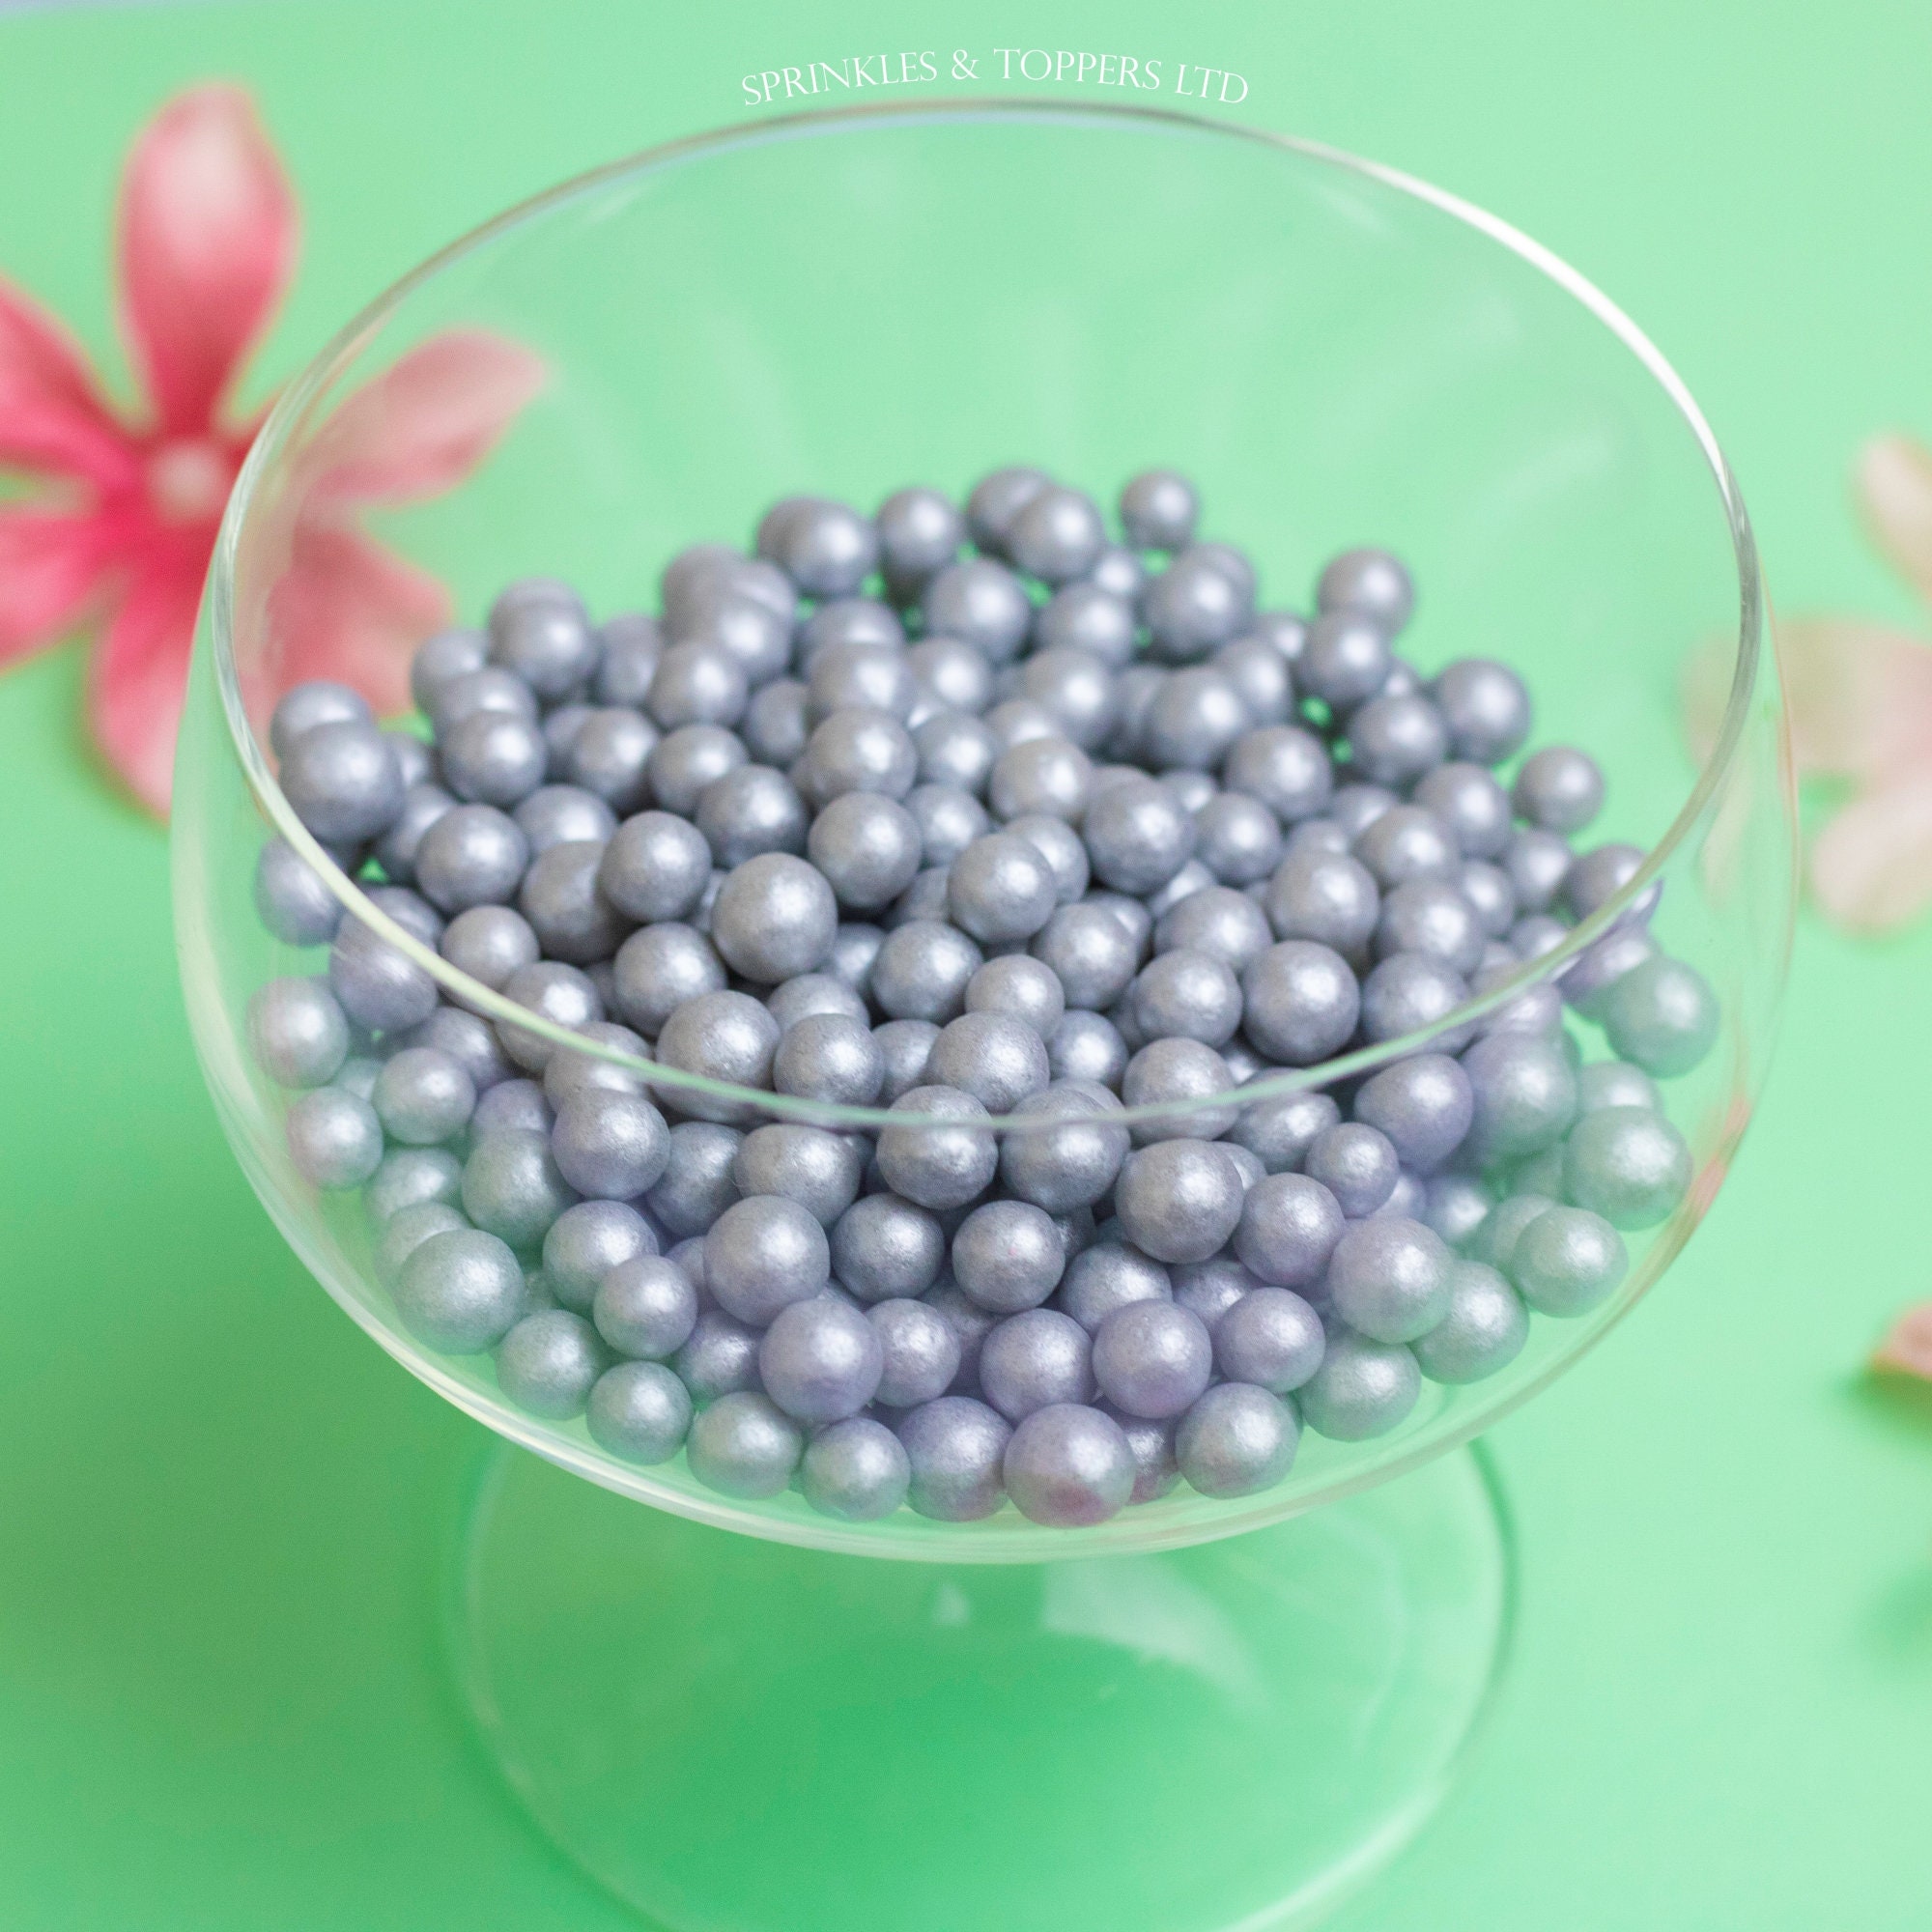 7mm Silver Edible Pearls Non Pareils Dragees Sugar Balls Cake Decor 25g